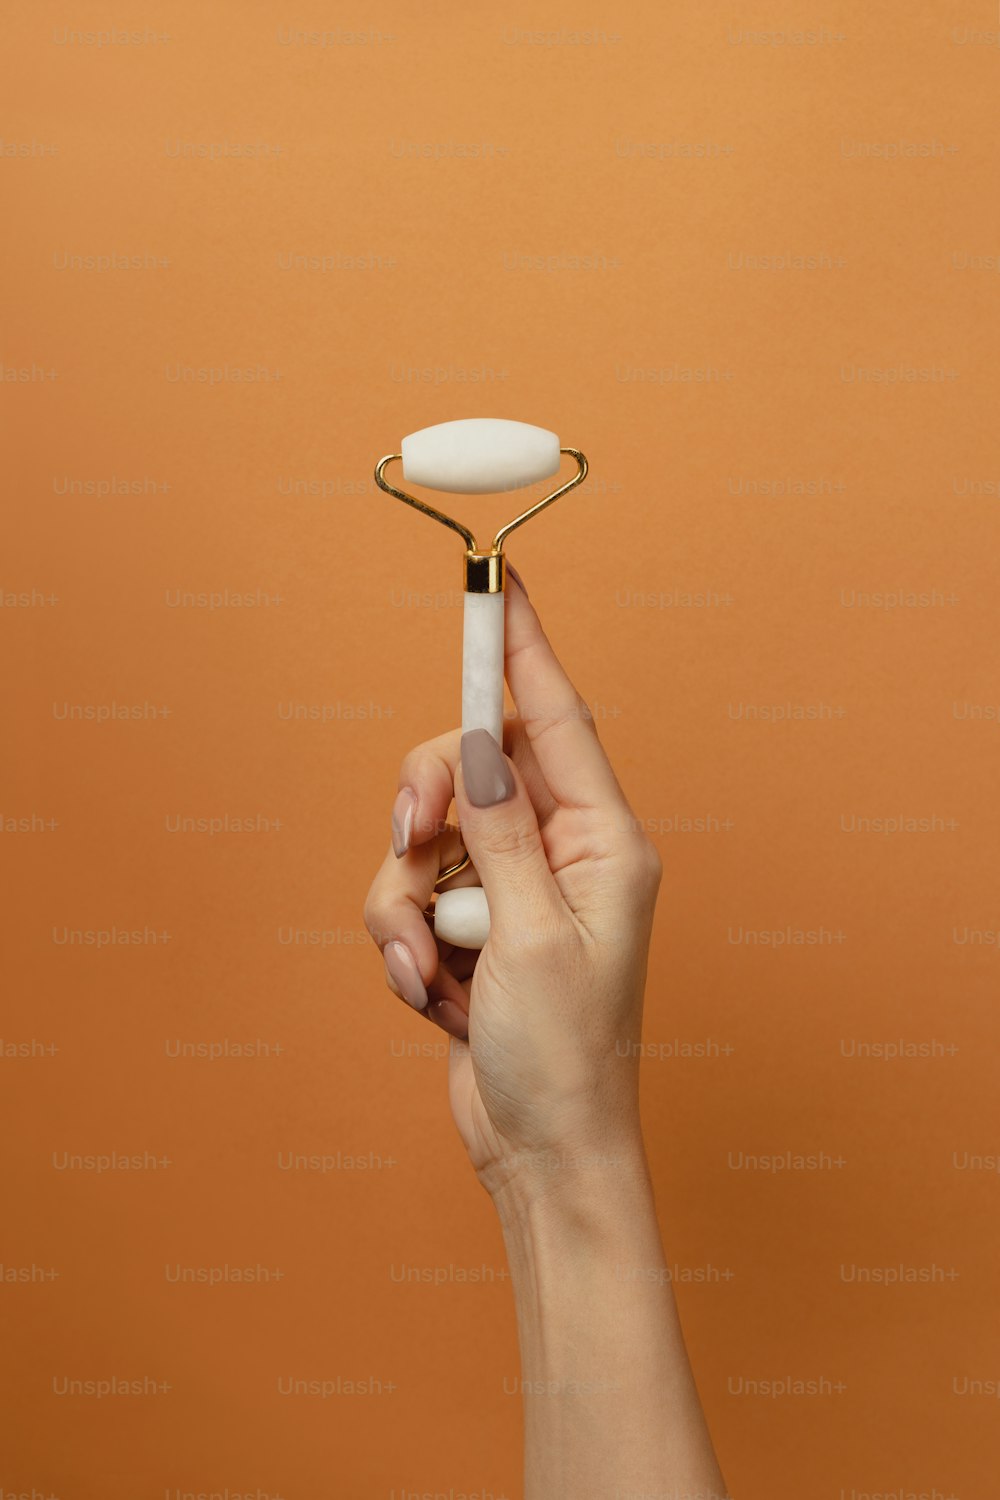 Una mano sosteniendo un cepillo de dientes frente a un fondo naranja